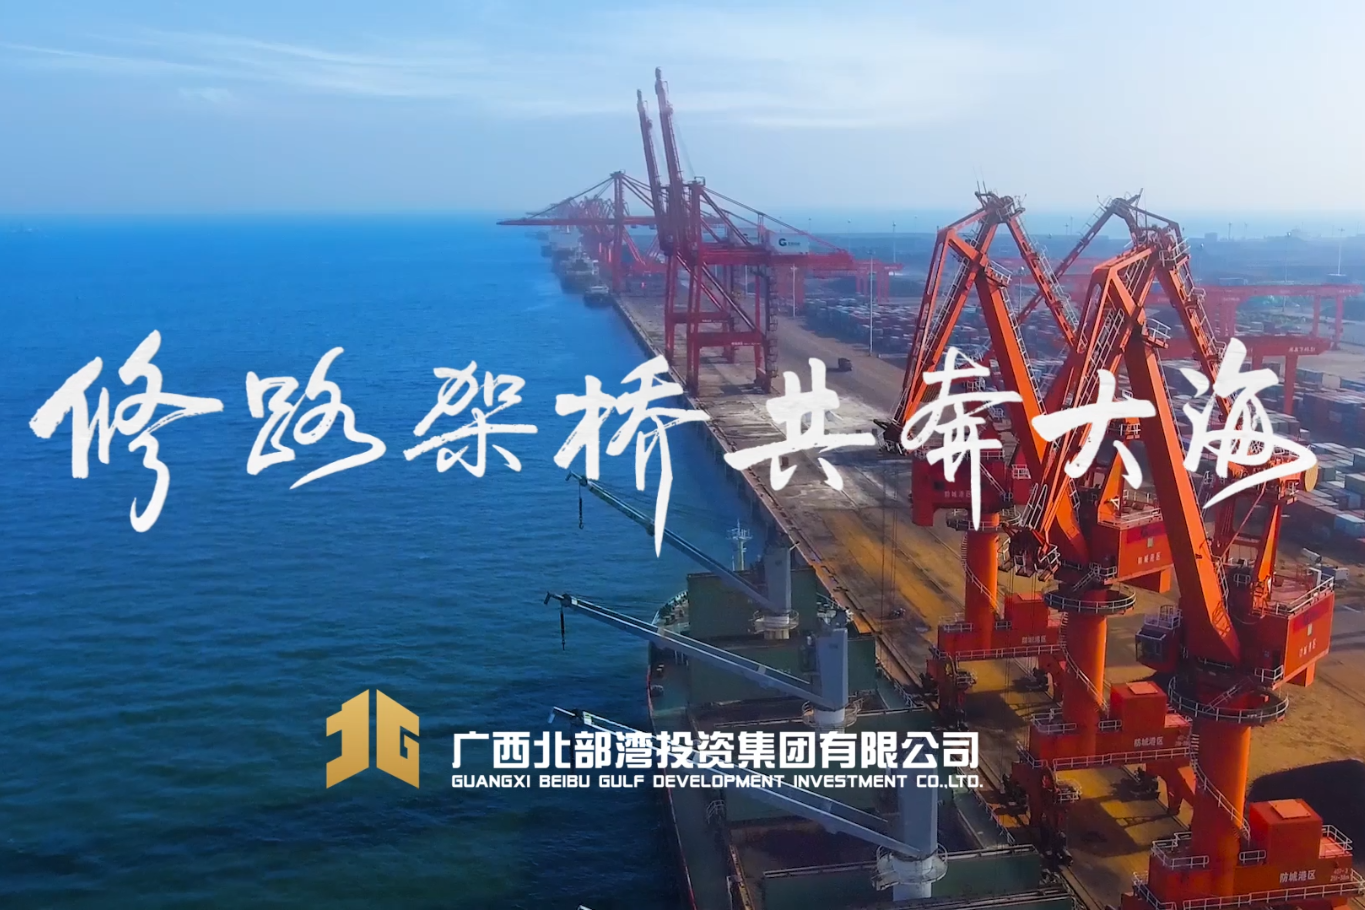 广西北投集团公益短片《看大海》